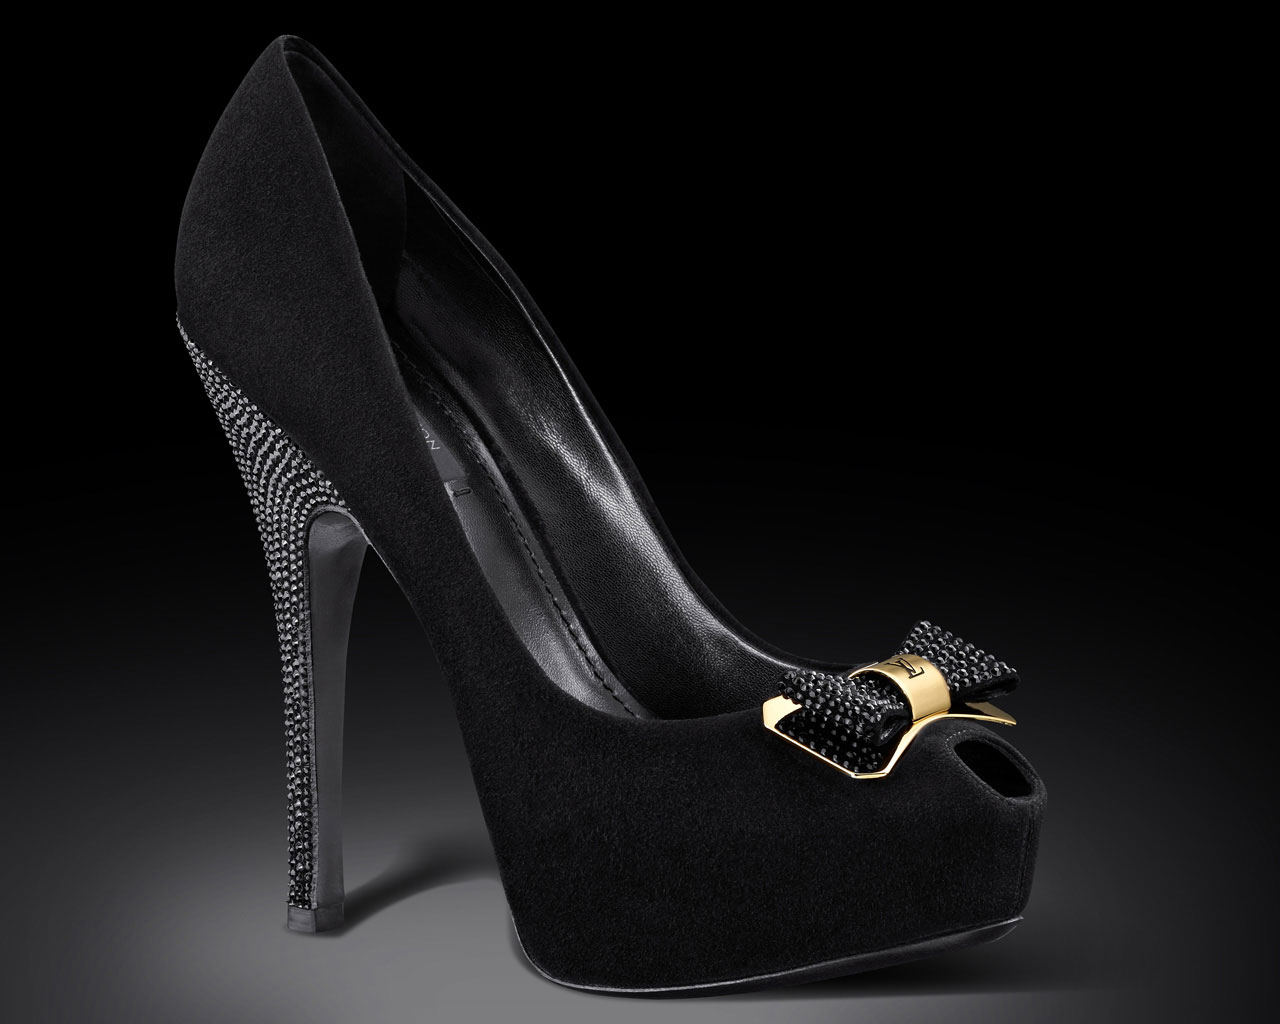 » Top 10 Luxury Shoe Brands For Women